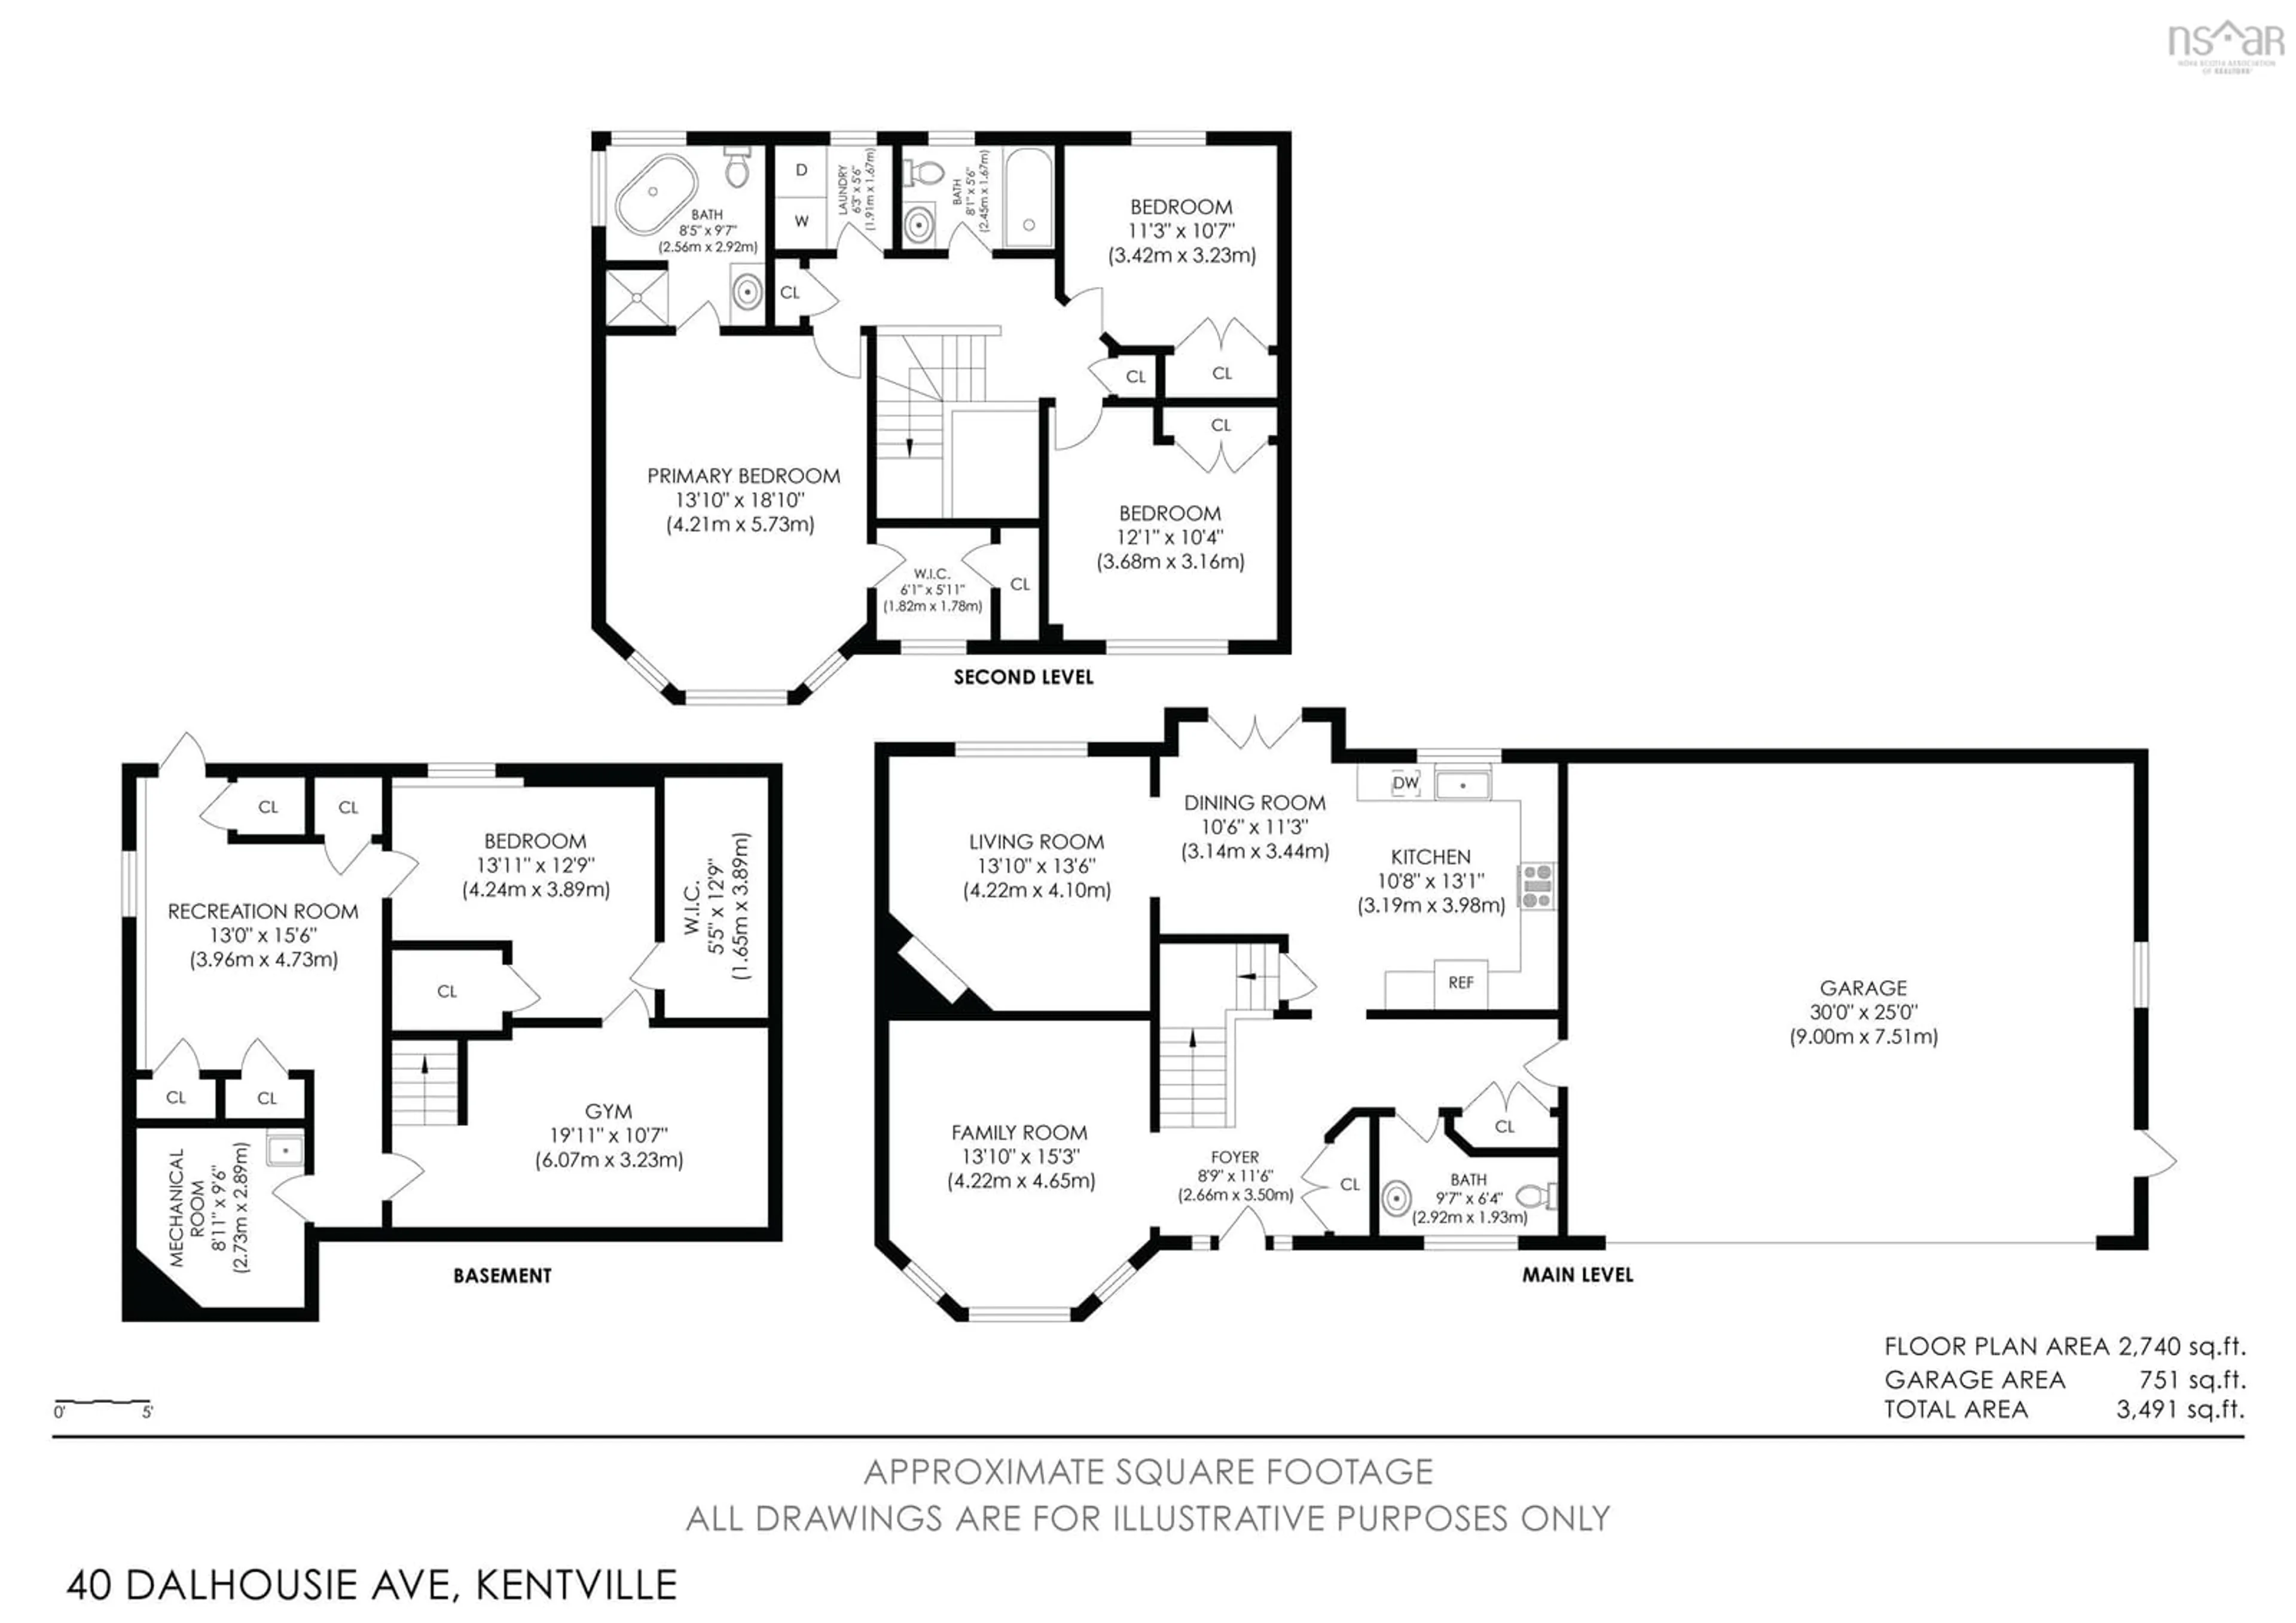 Floor plan for 40 Dalhousie Ave, Kentville Nova Scotia B4N 5E5